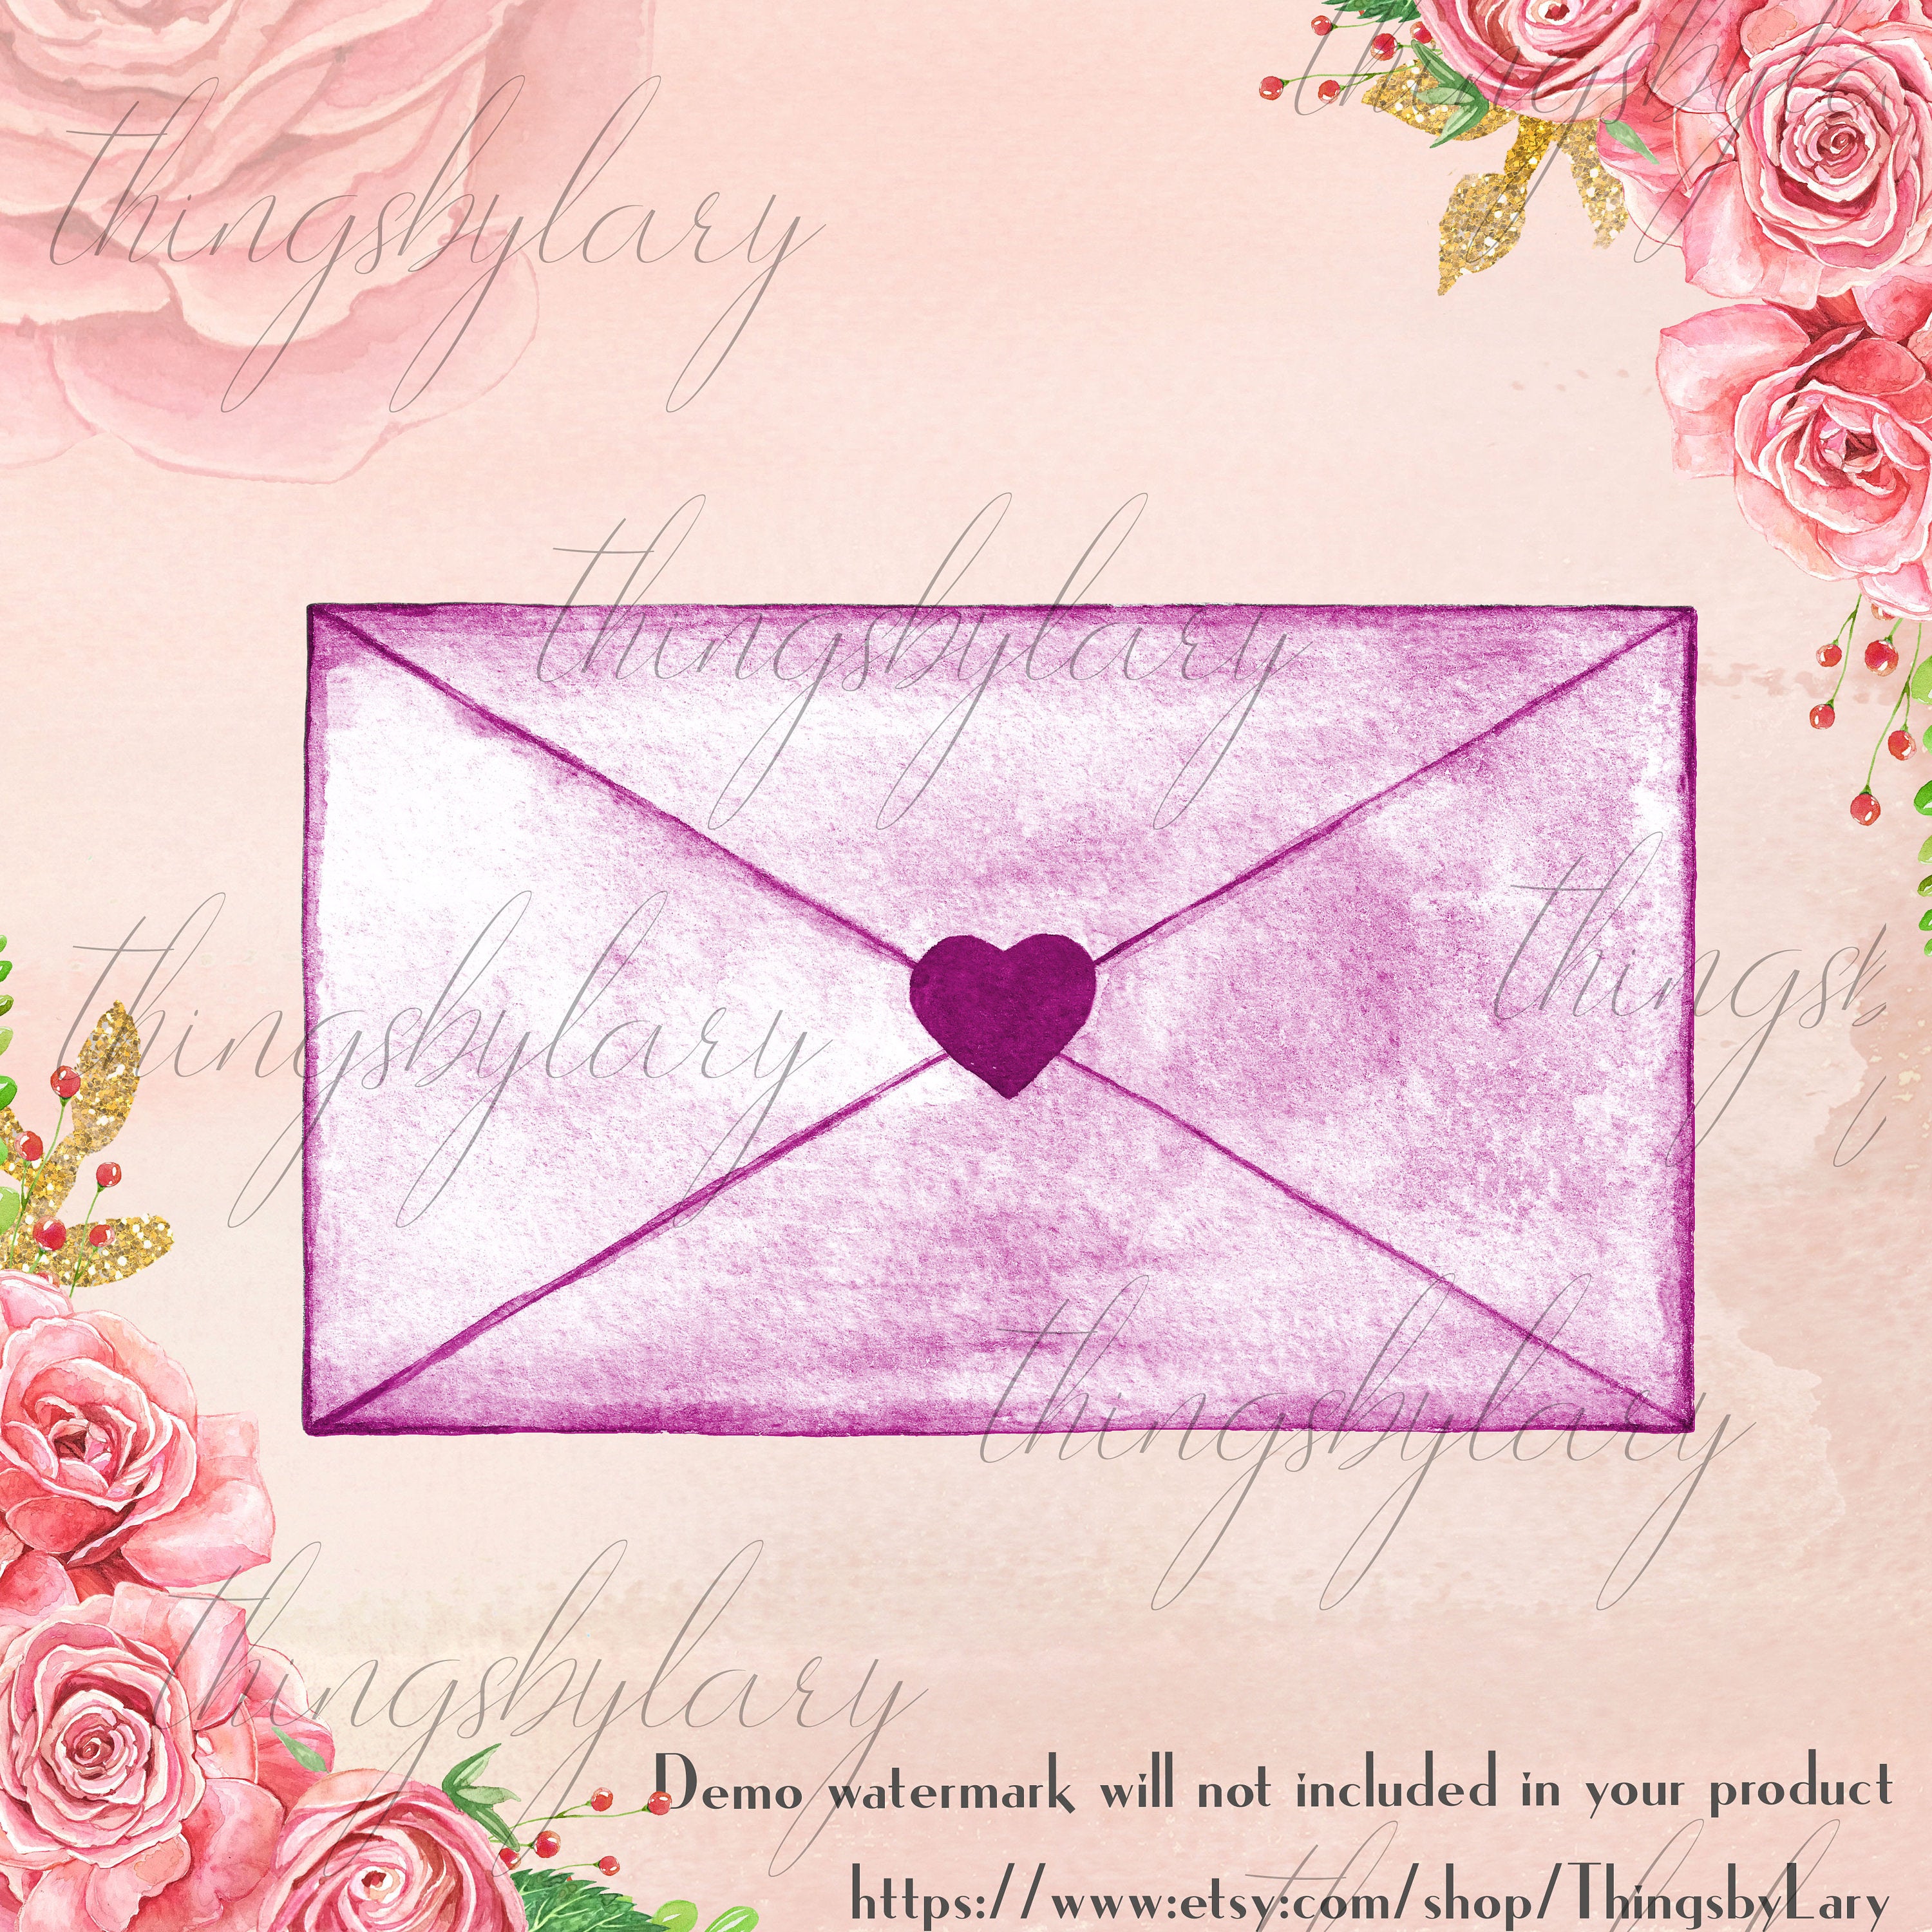 100 Watercolor Love Letter Envelopes, Love Clipart, Watercolor Clipart, Love Letter, 100 PNG Clipart, Planner Clipart, Valentine Clip Arts